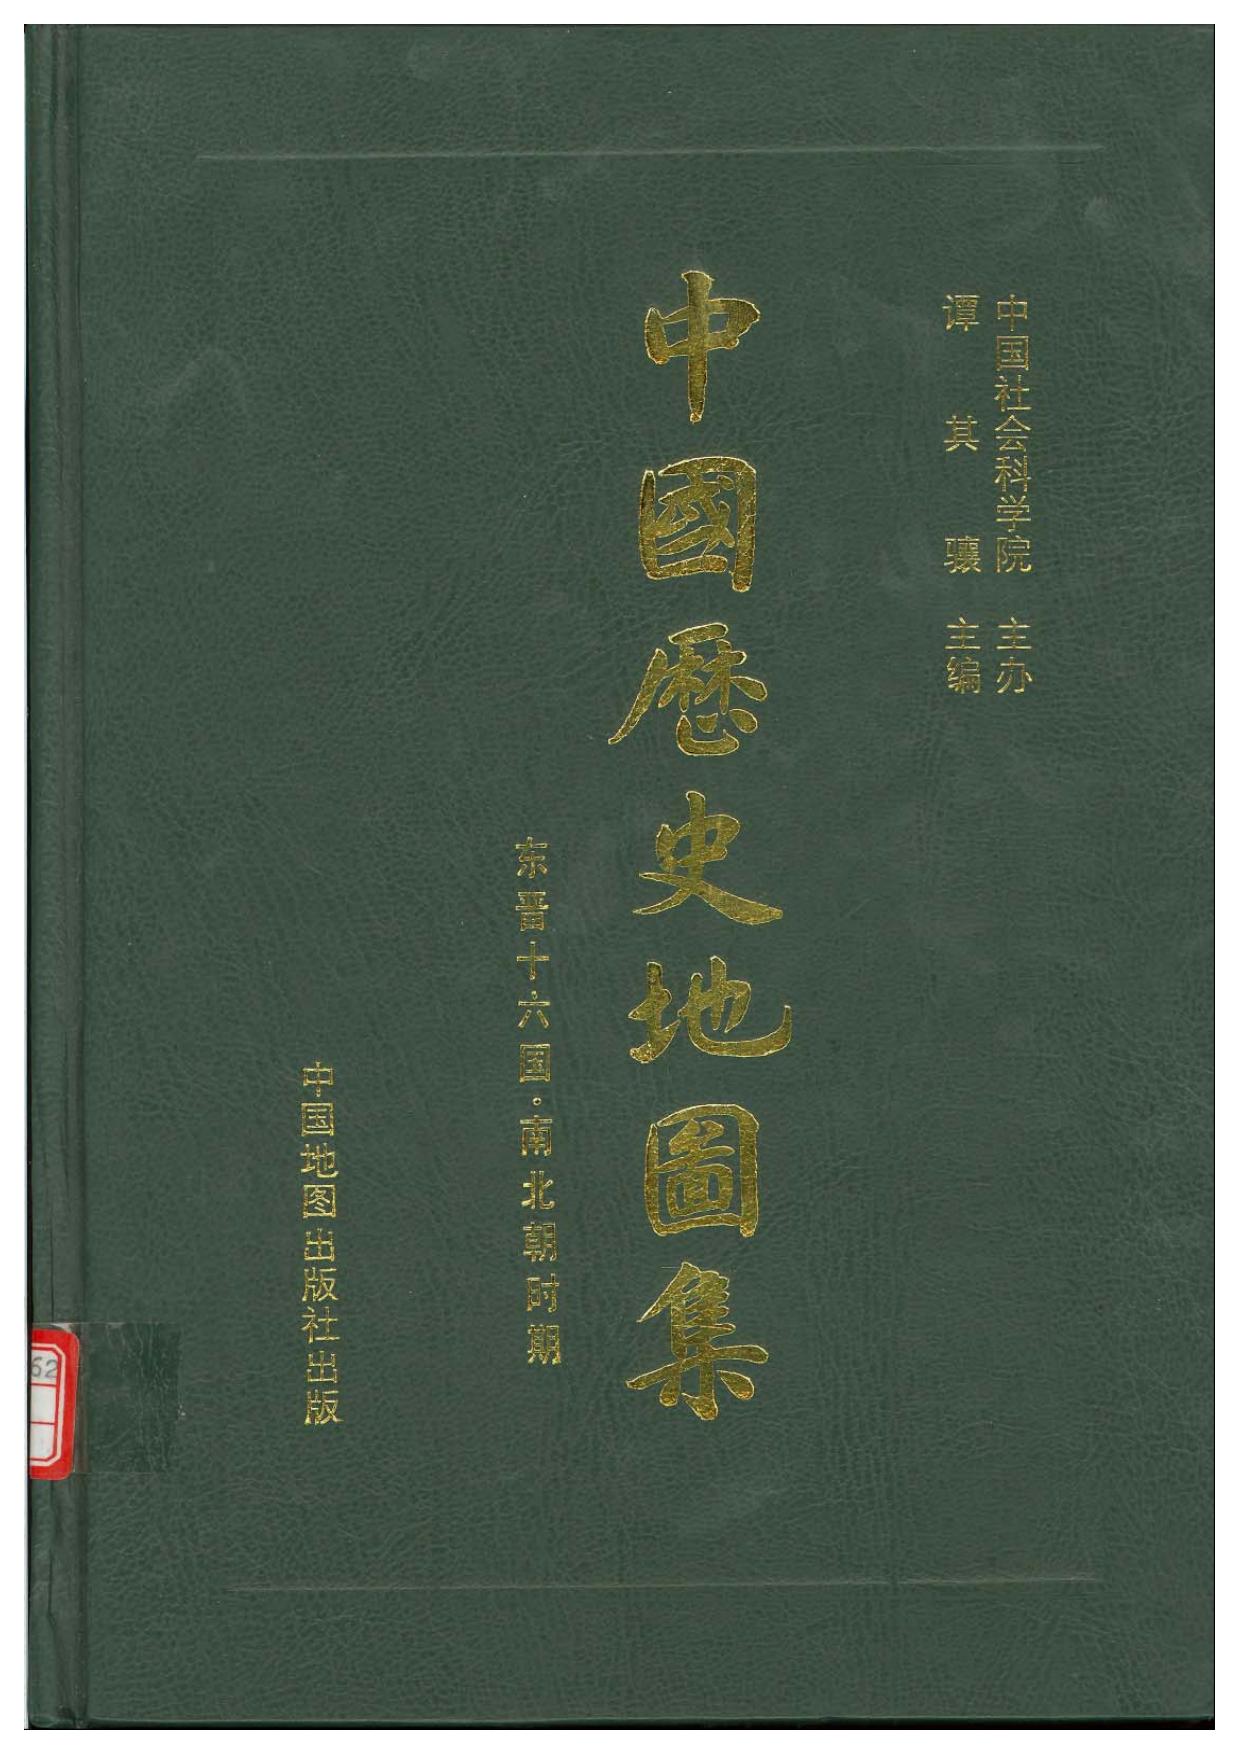 中国历史地图集 第四册 东晋 南北朝